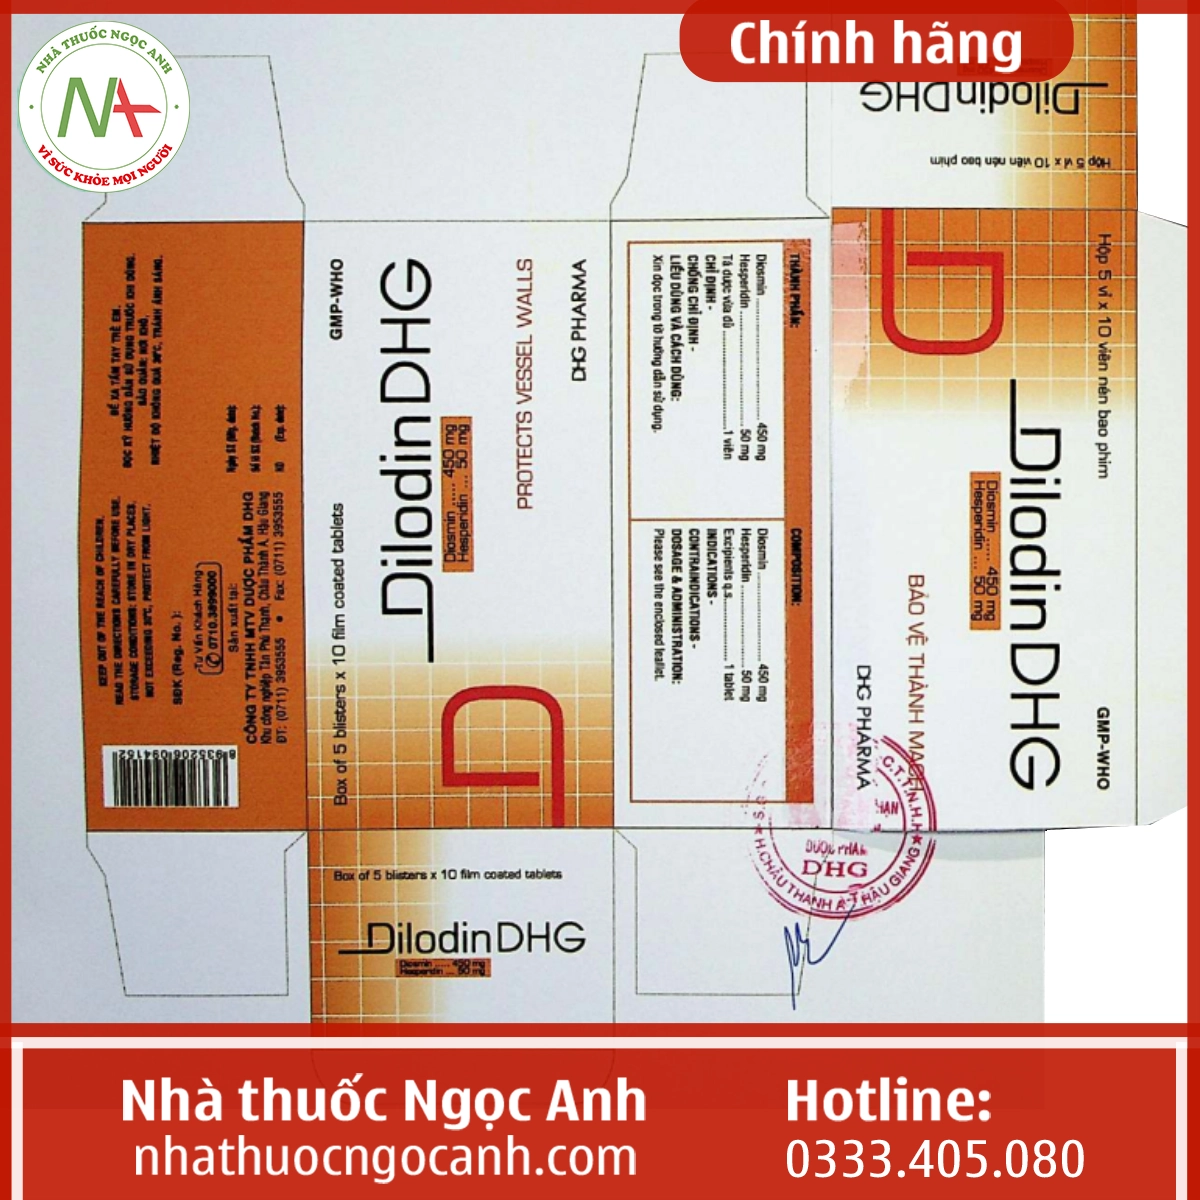 Nhãn thuốc DilodinDHG